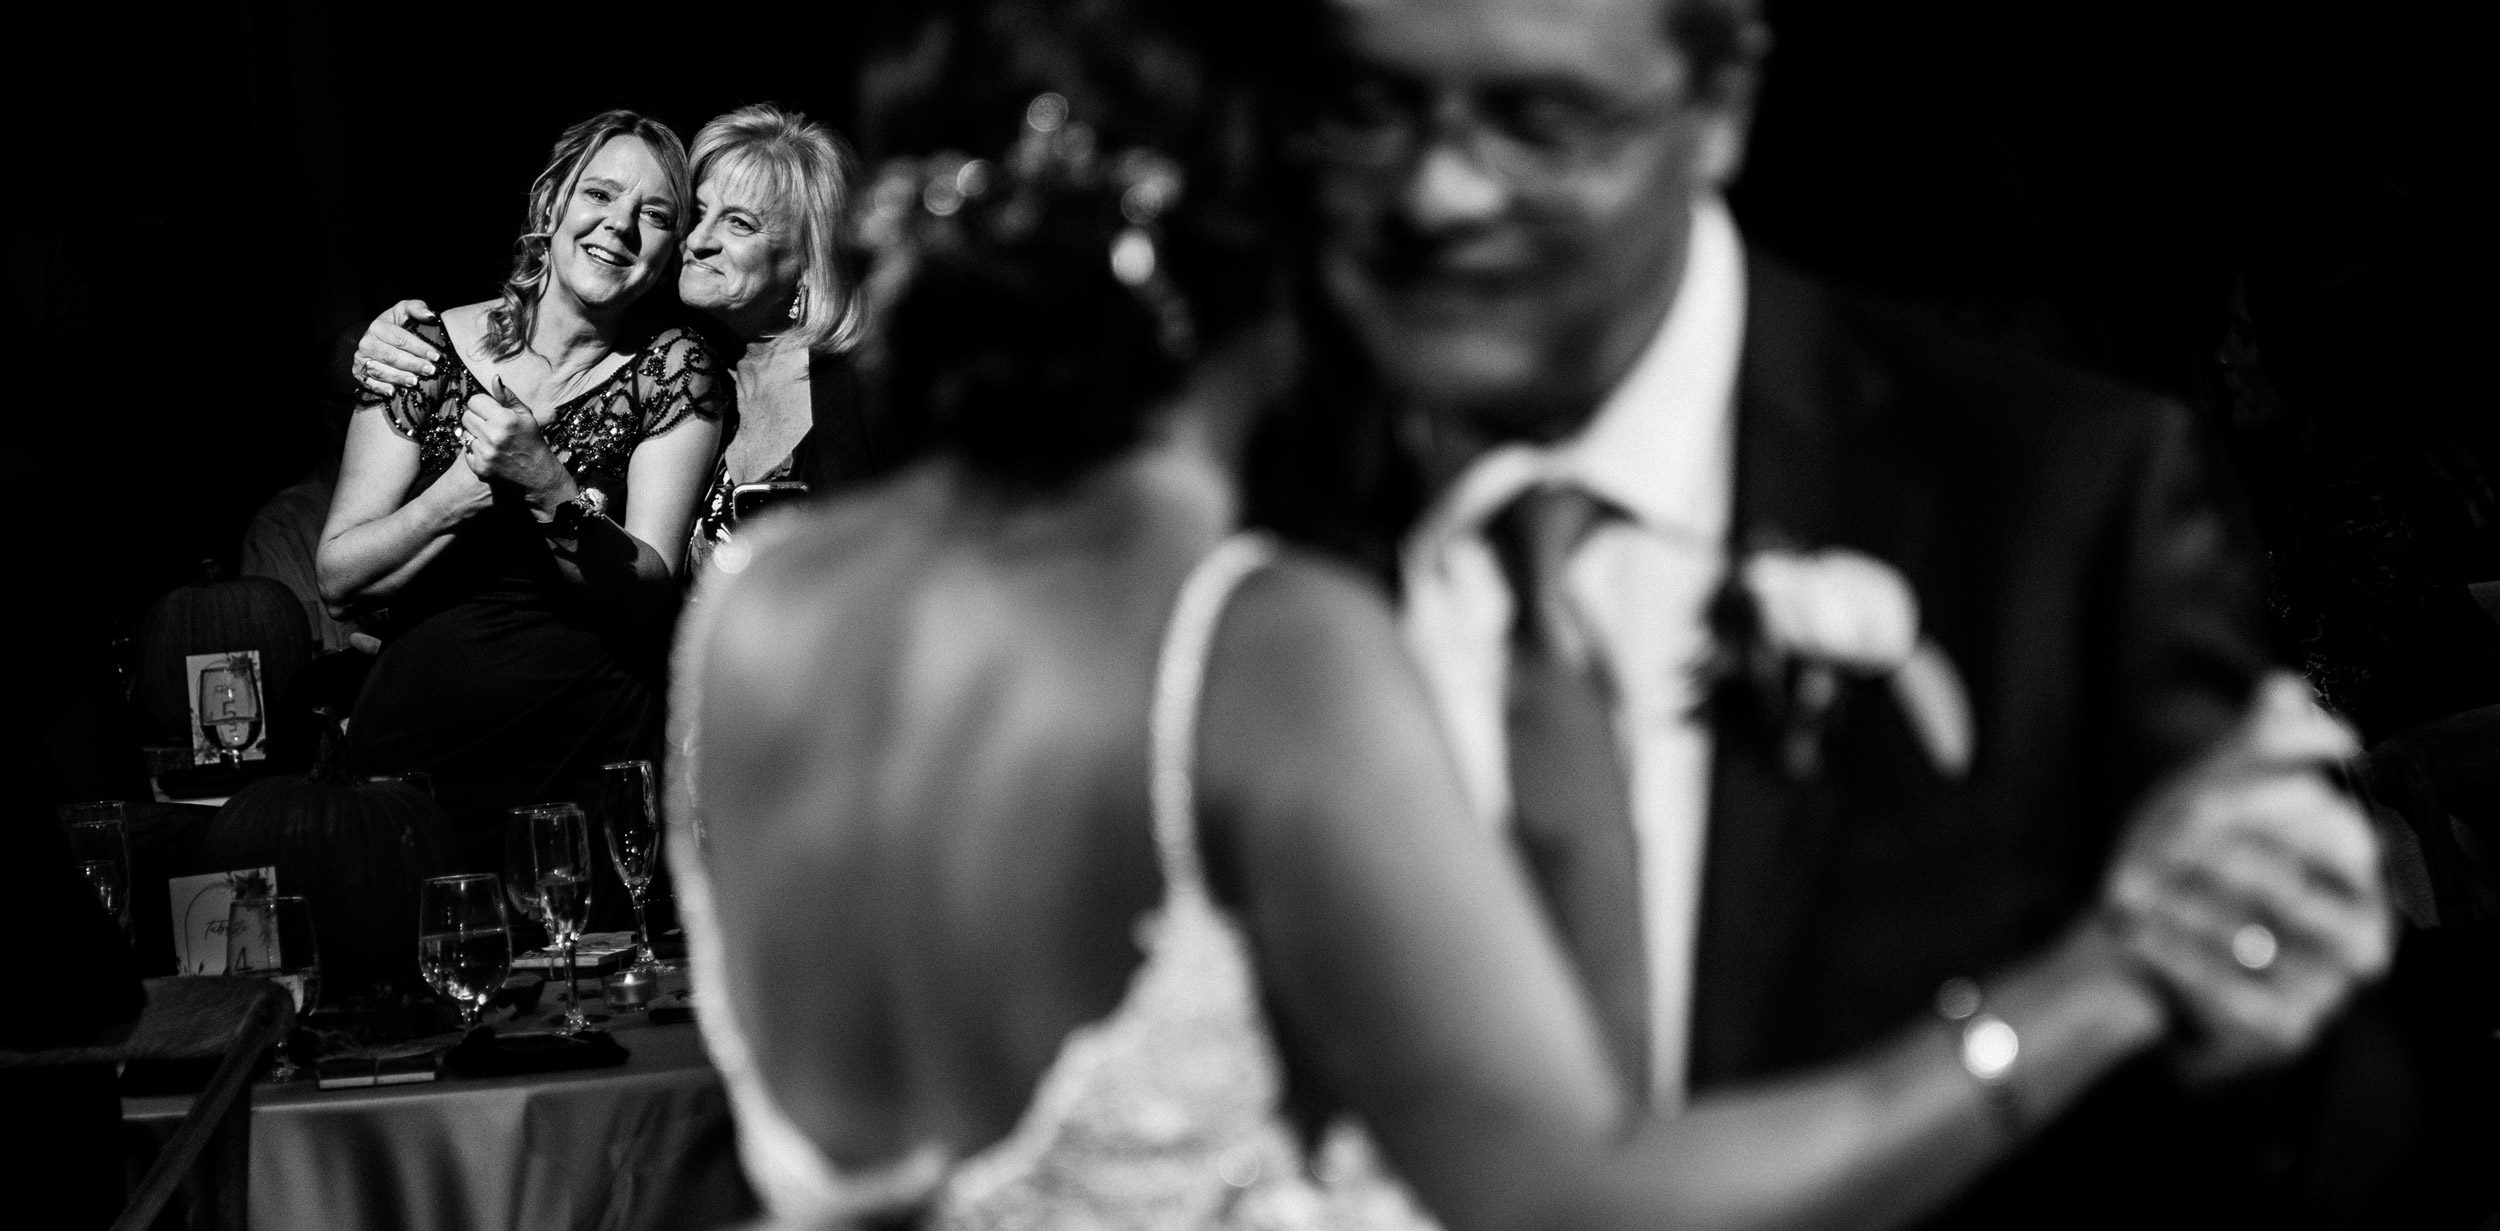 Colorado wedding photographer Shea McGrath Photography